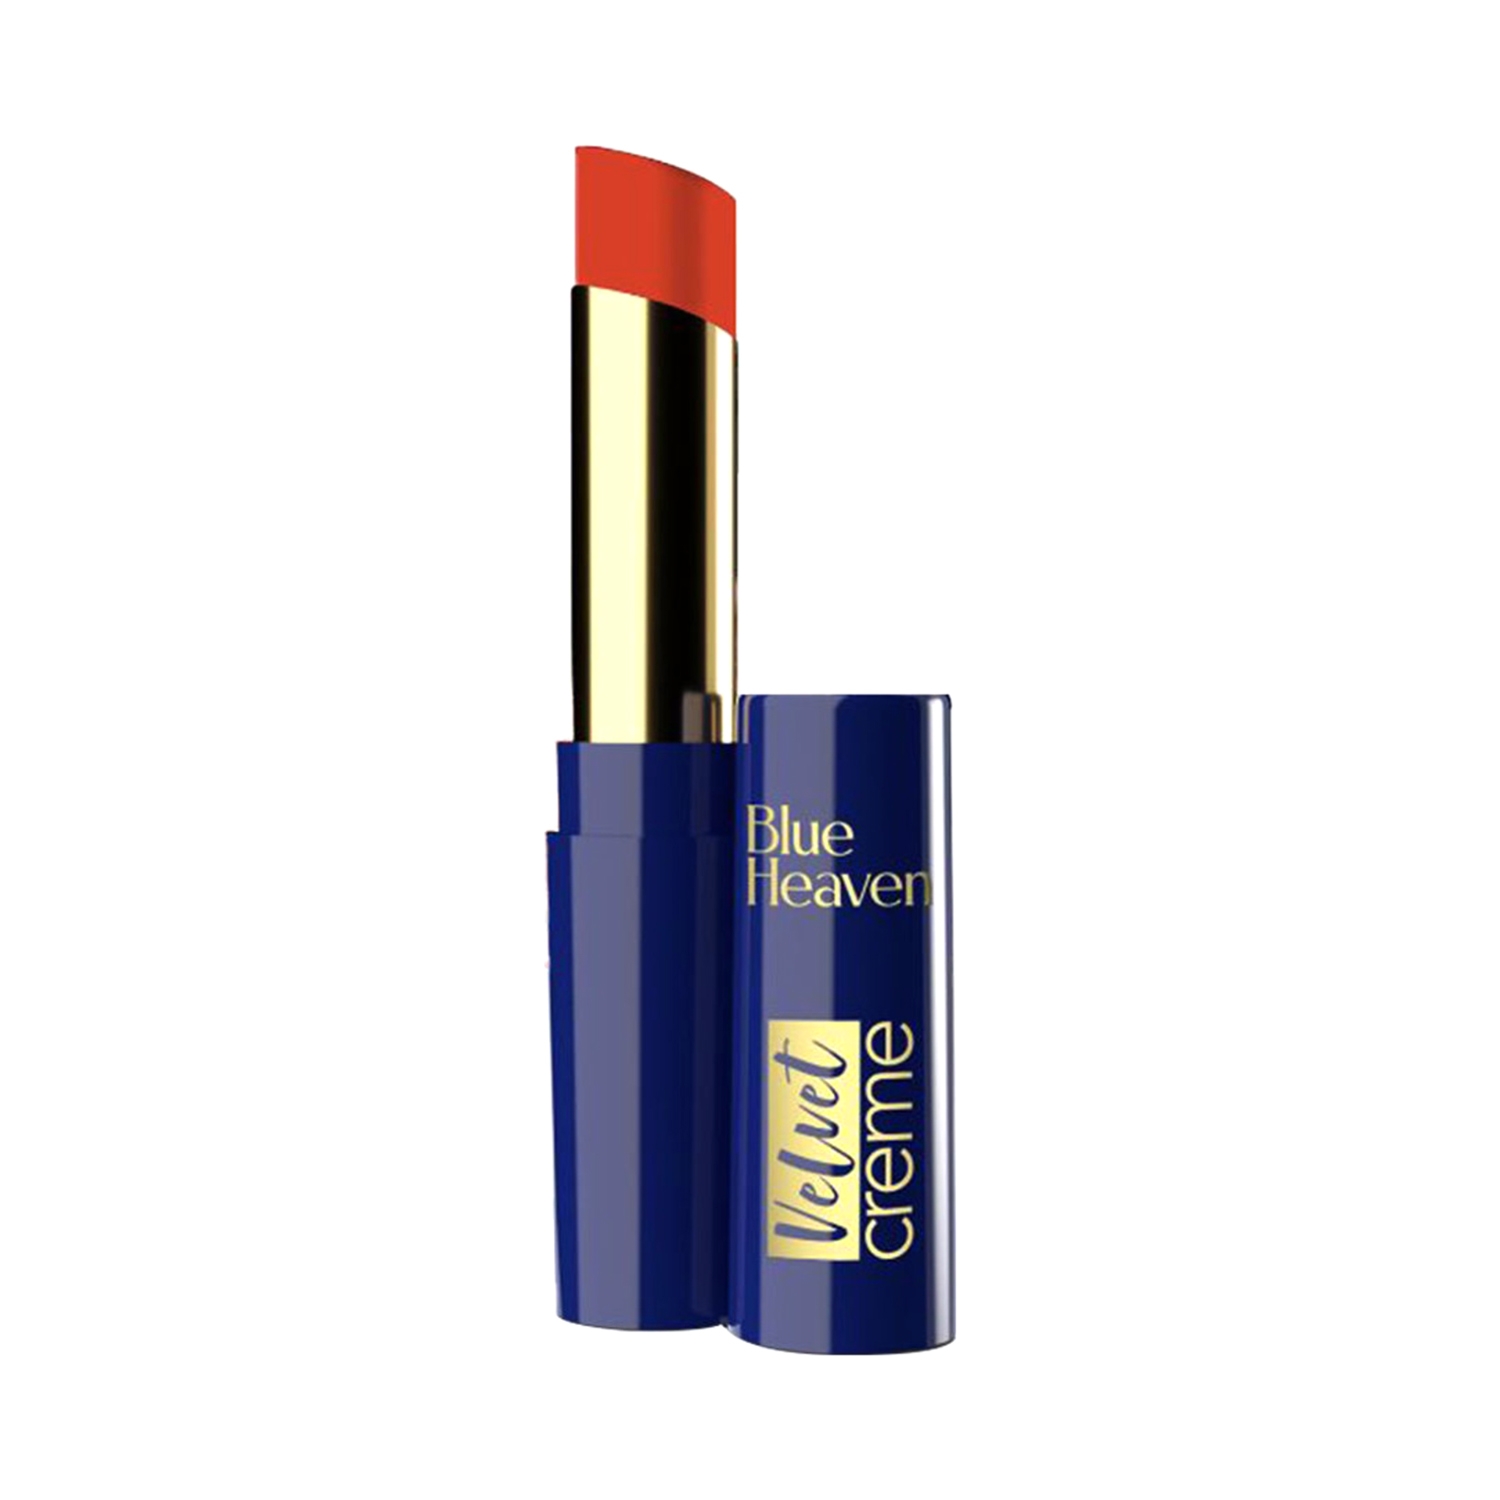 Blue Heaven Velvet Creme Lipstick - Burnt Orange (3.5g)